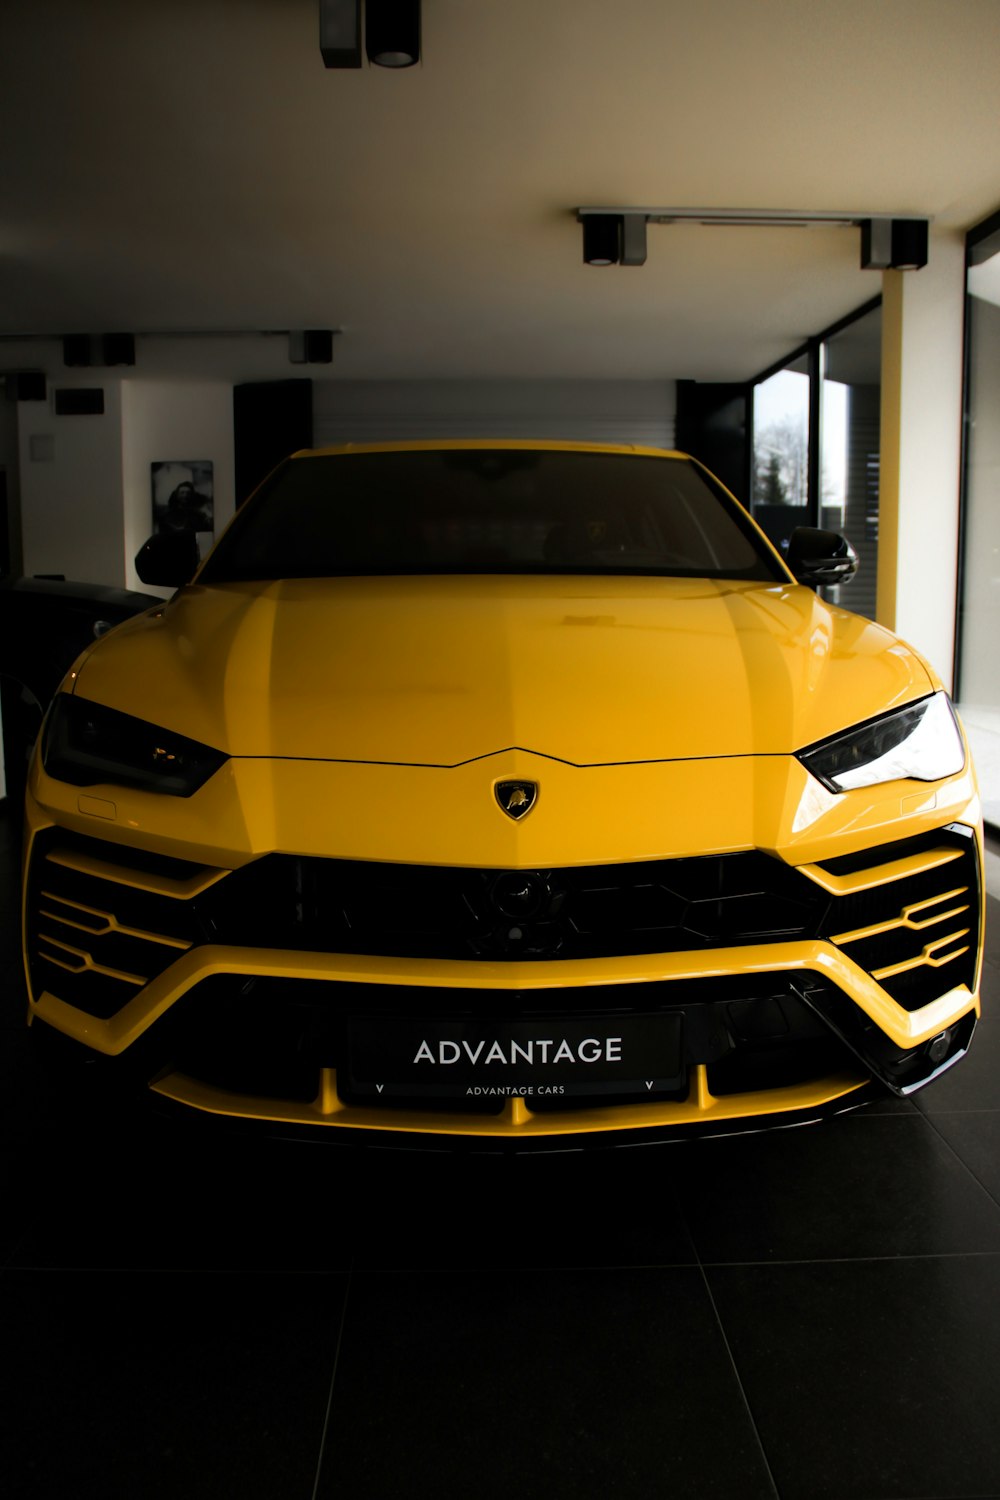 Ein gelber Sportwagen, der in einer Garage geparkt ist